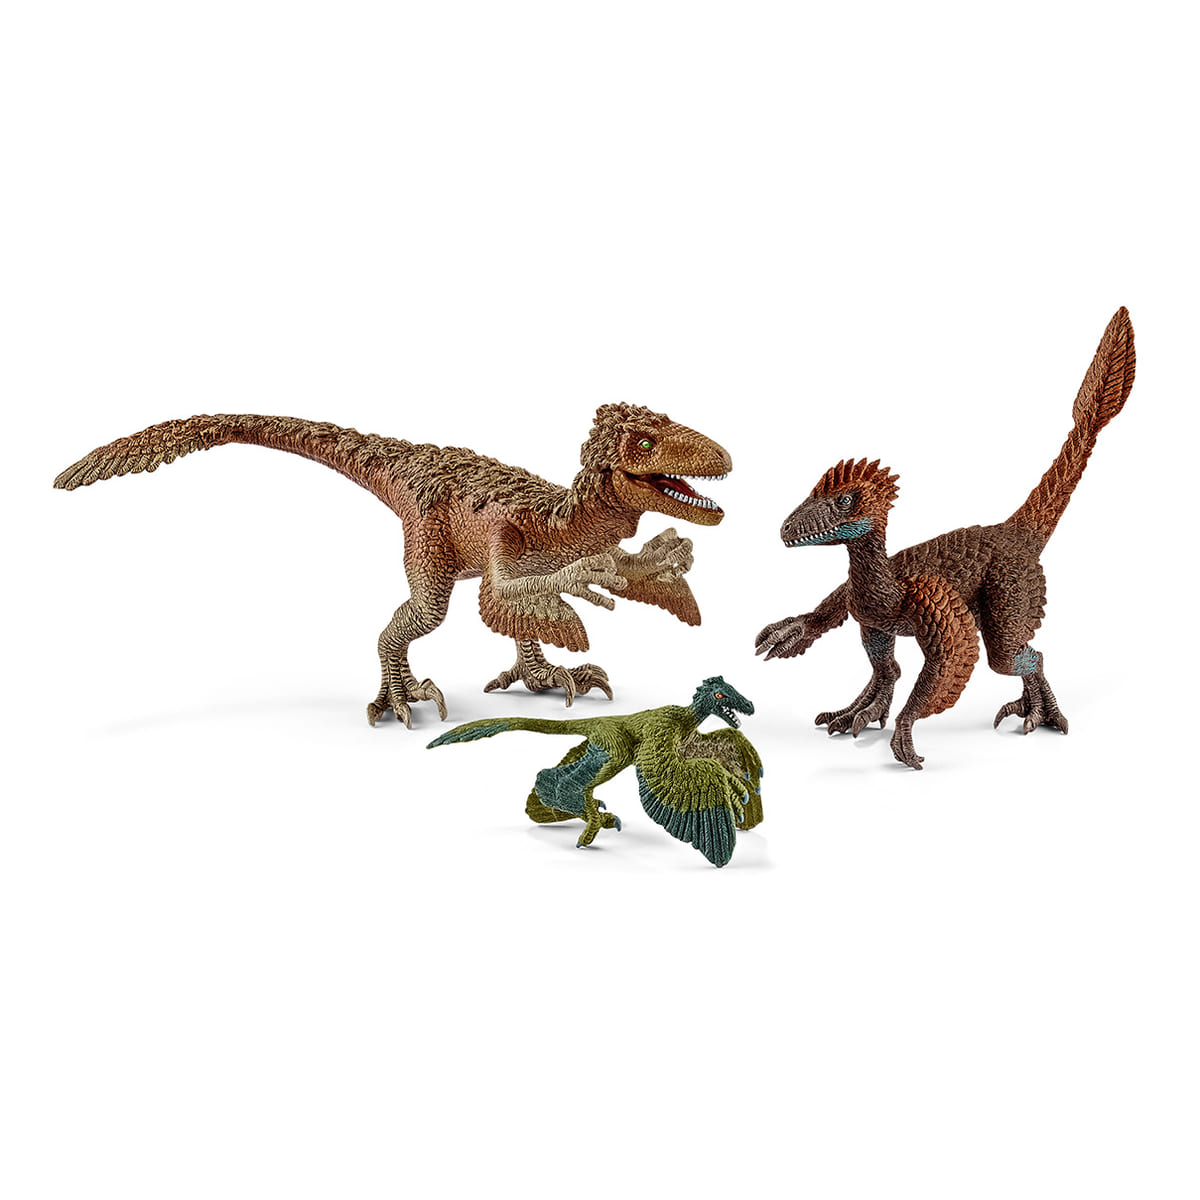 シュライヒ「Dinosaurs」-原始の時代の恐竜たち